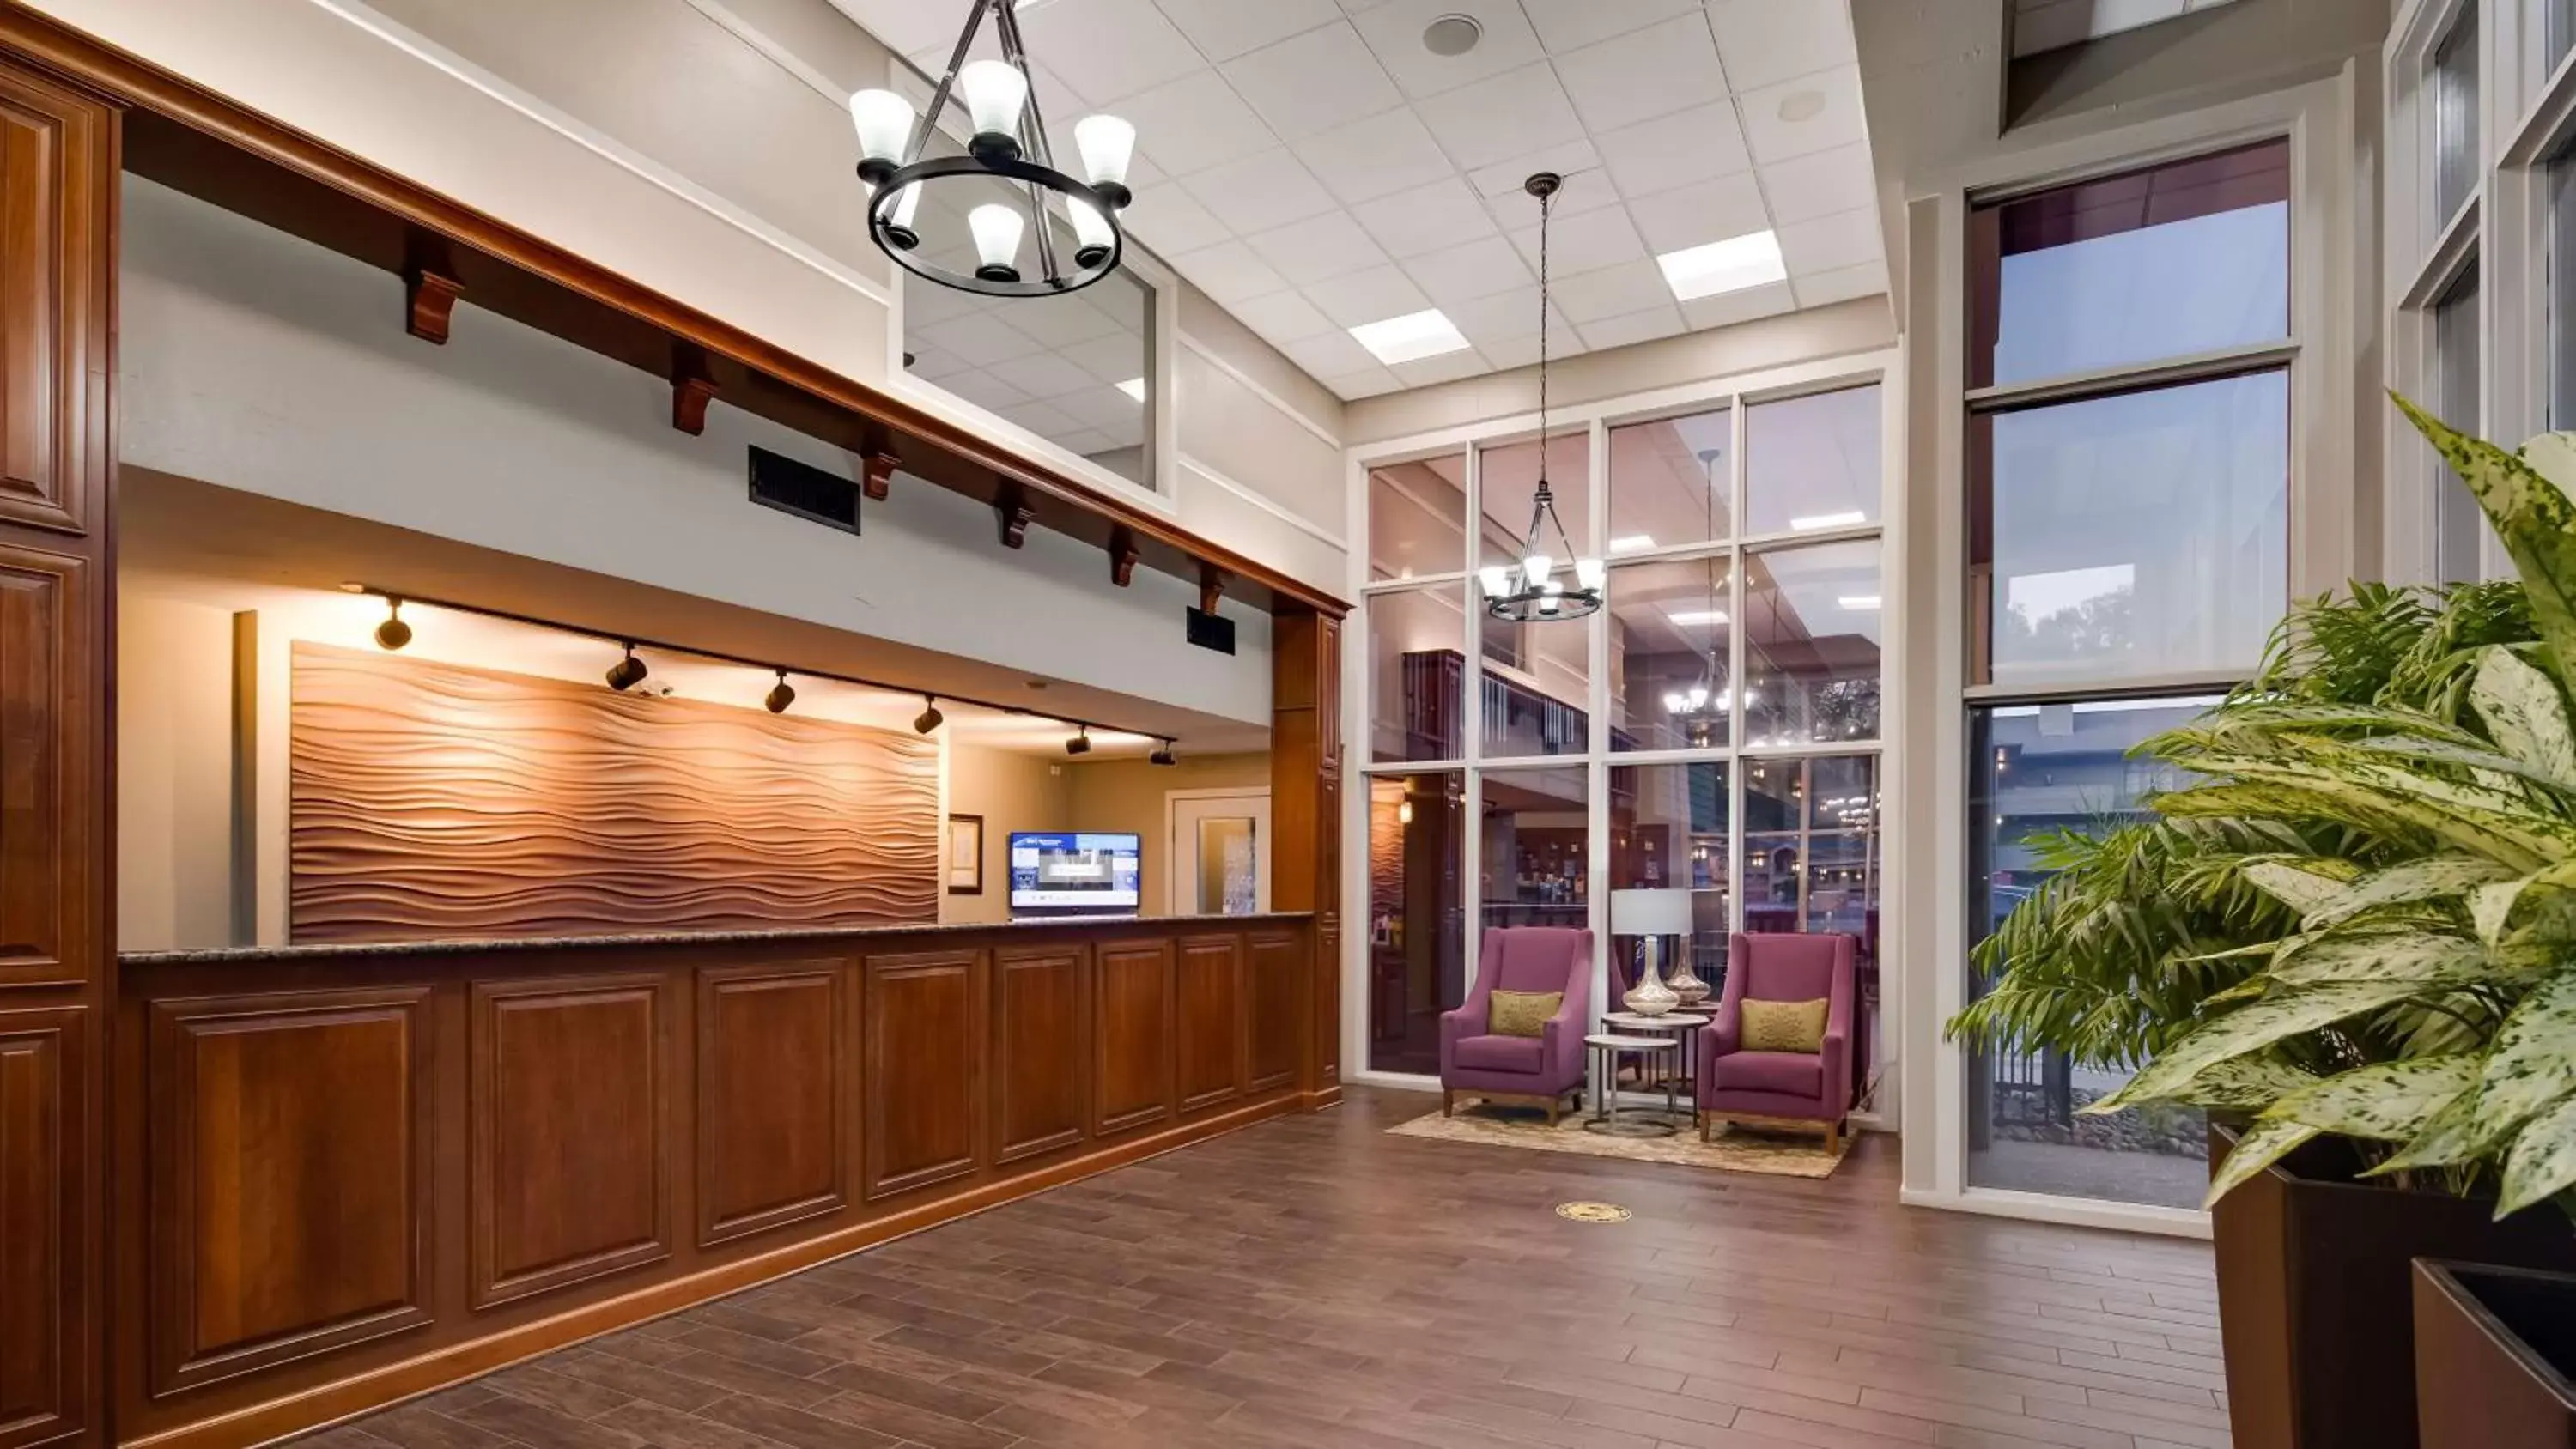 Lobby or reception, Lobby/Reception in Best Western Plaza Inn